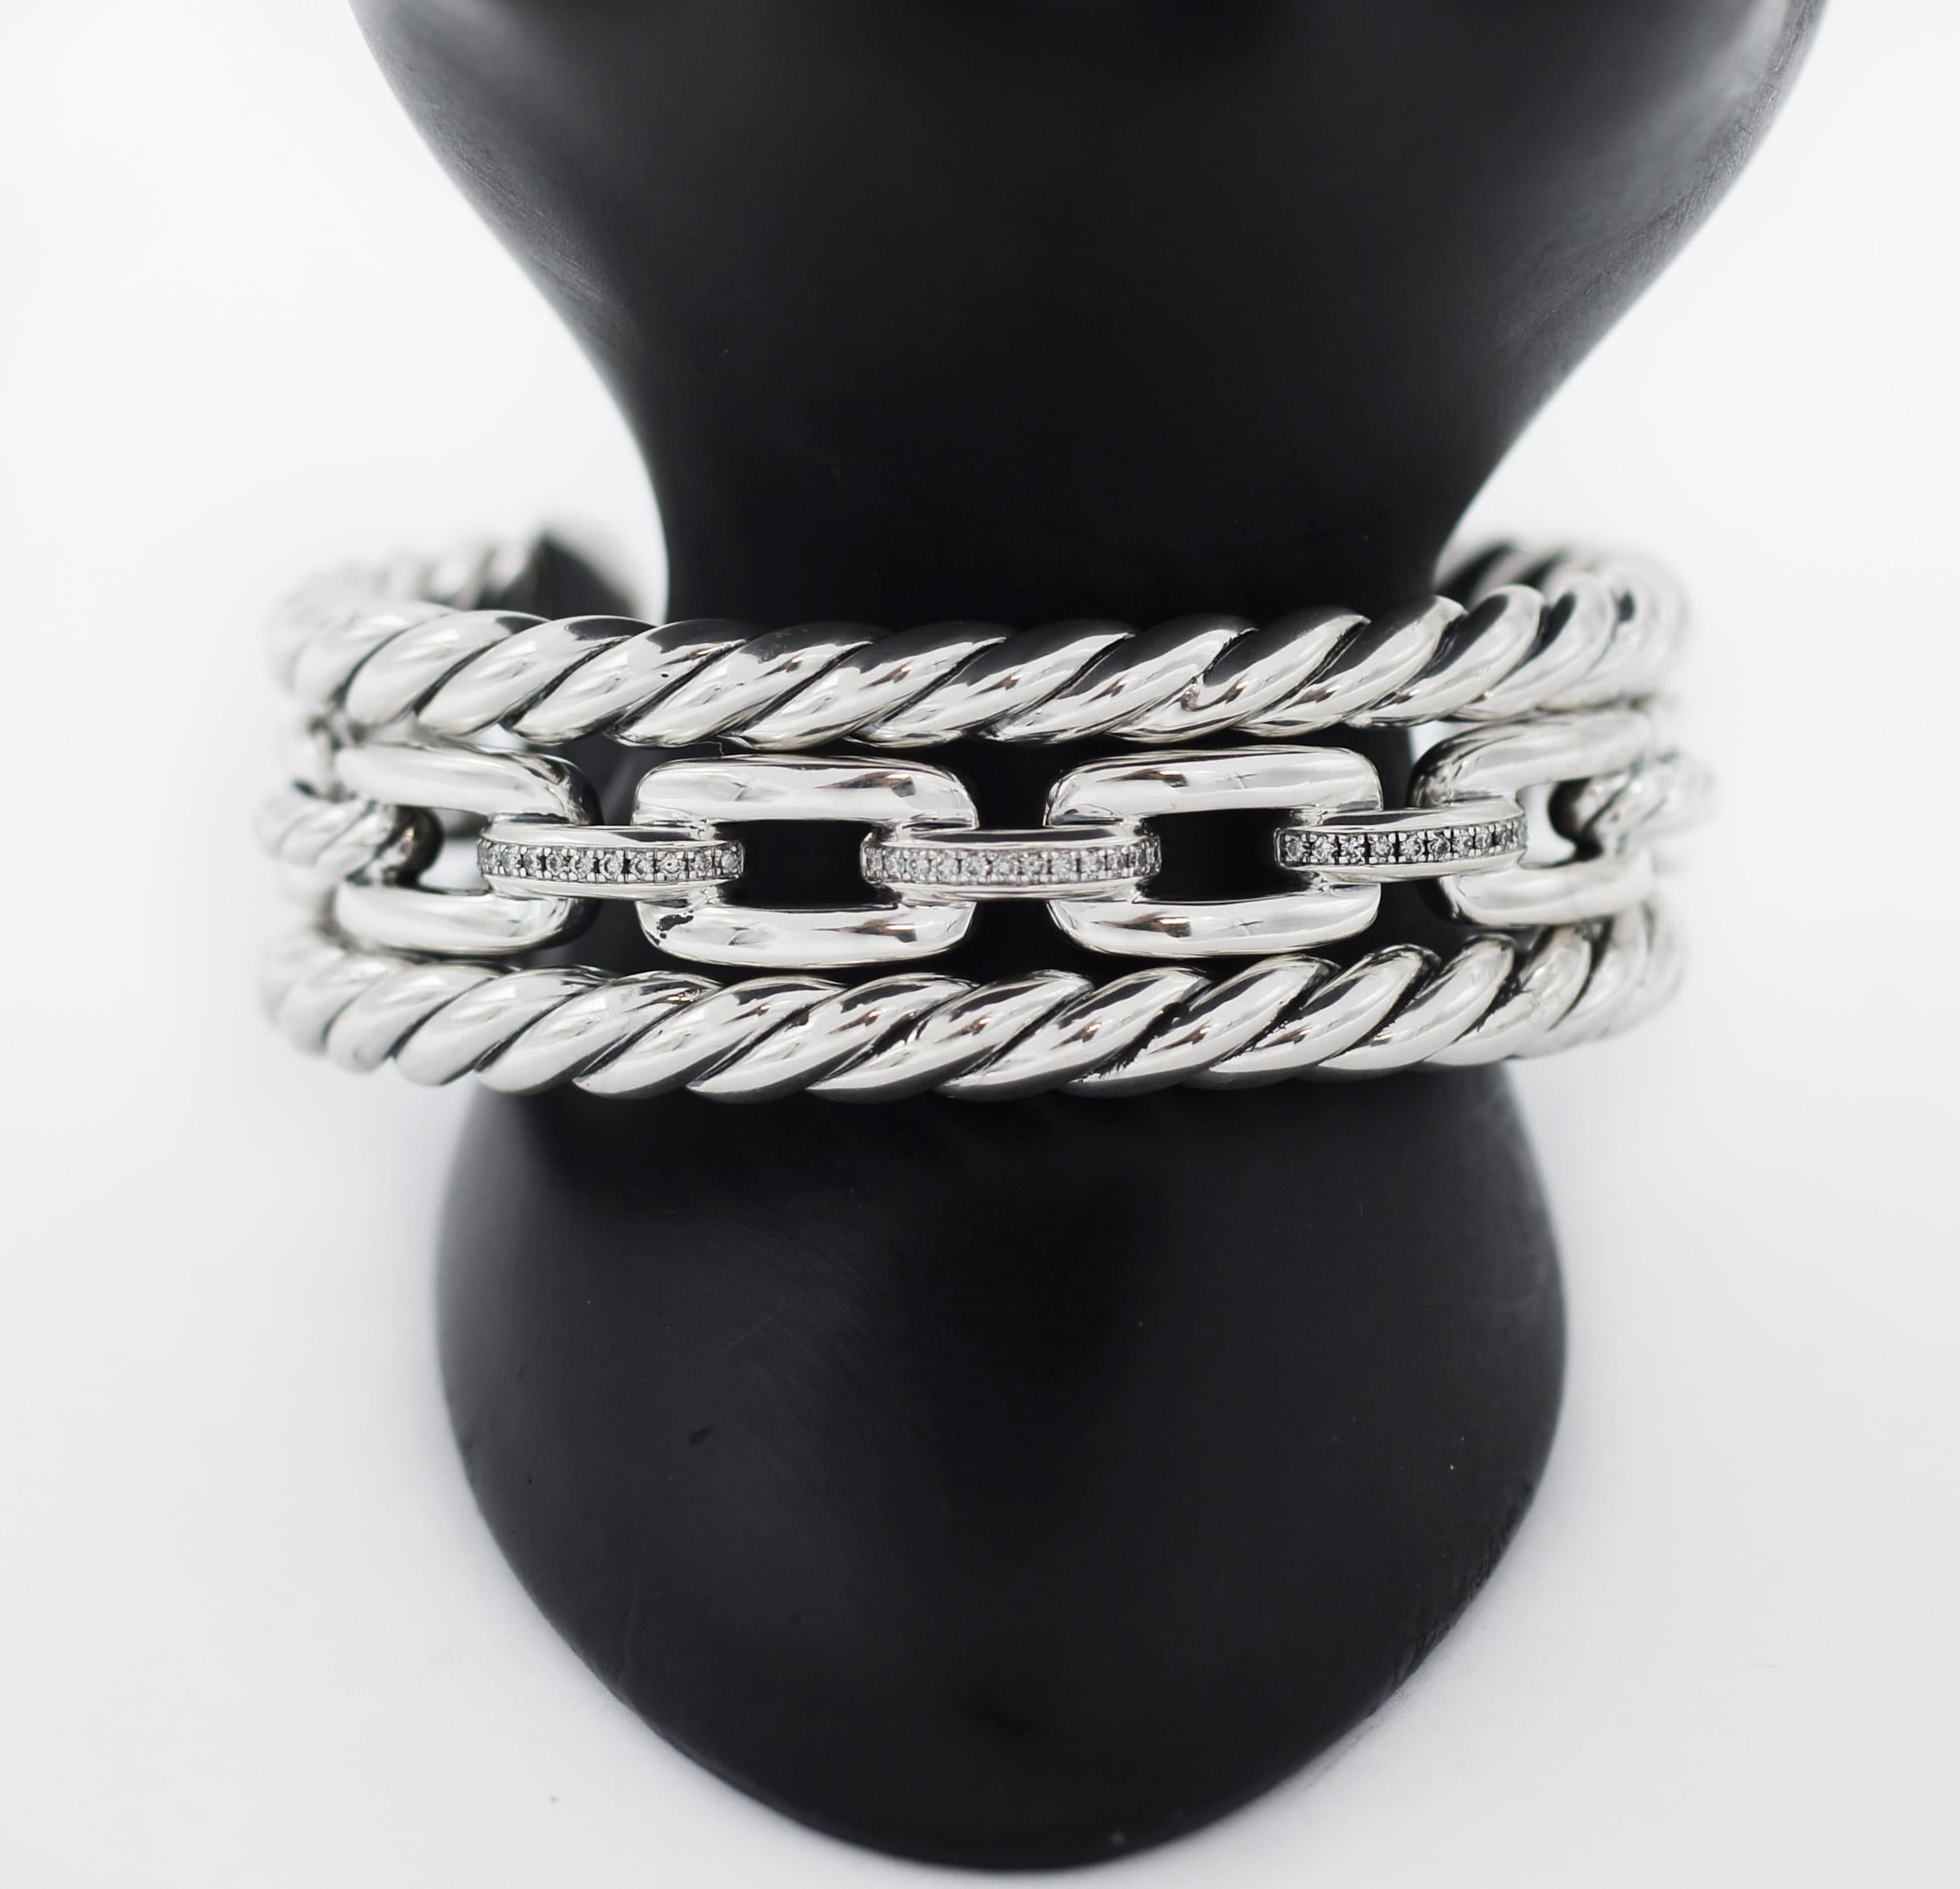 DAVID YURMAN
Aus der Wellesley Collection'S.
Wellesley Link kombiniert drei der ikonischsten Designelemente von David Yurman - eine ovale Gliederkette, das Cable-Motiv und in Sterlingsilber gefasste Diamanten - zu einer zeitlosen Kollektion, die ein